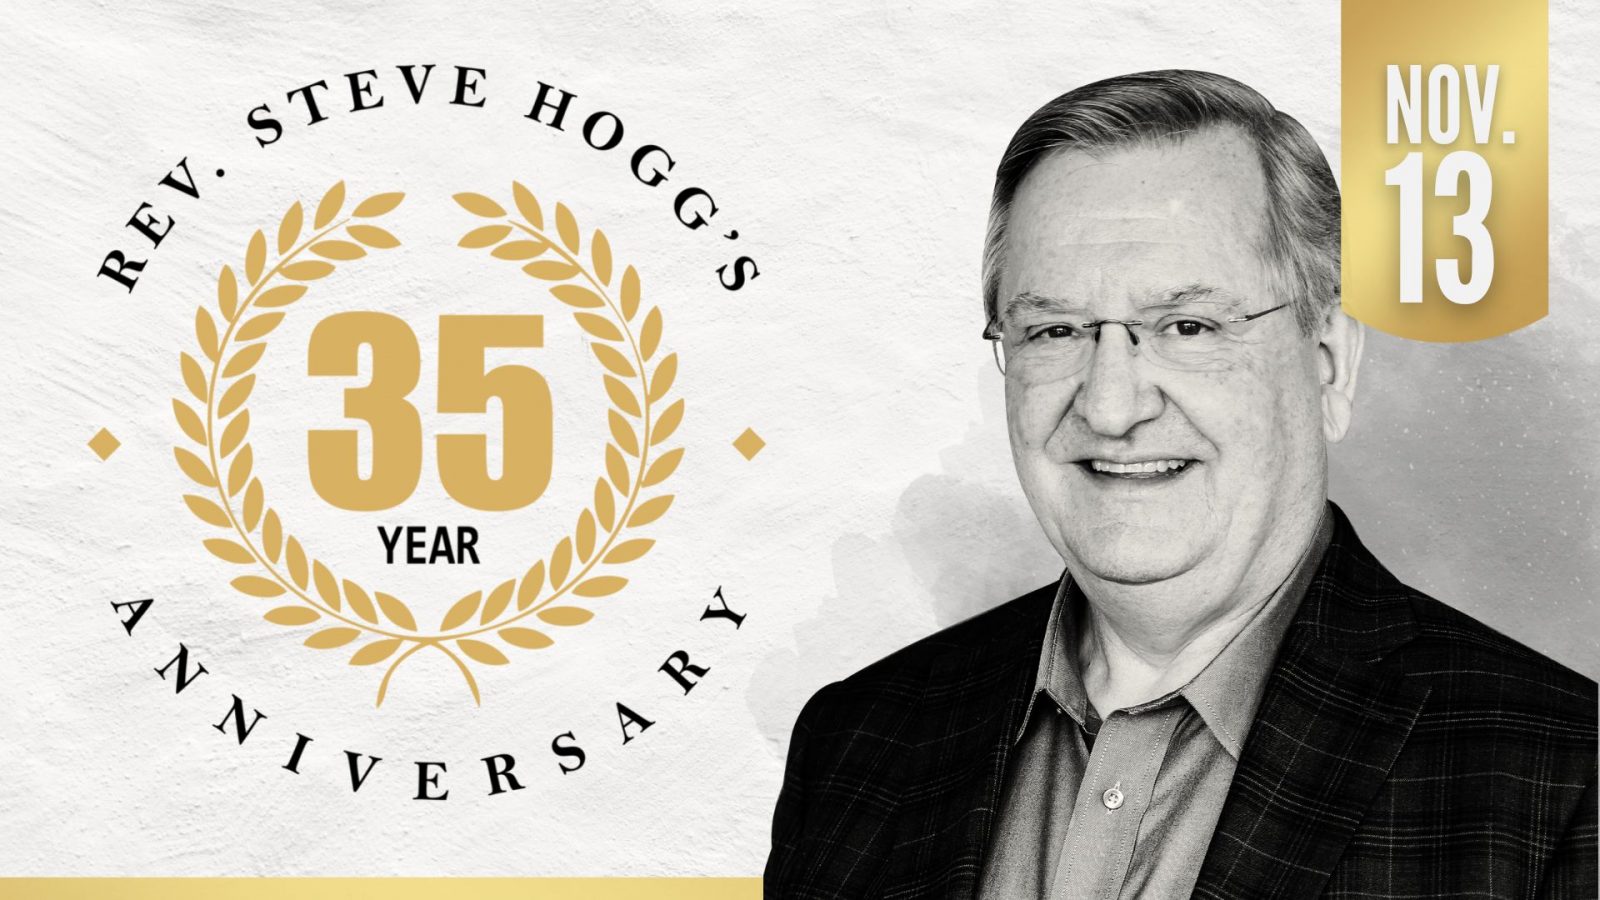 Steve Hogg 35